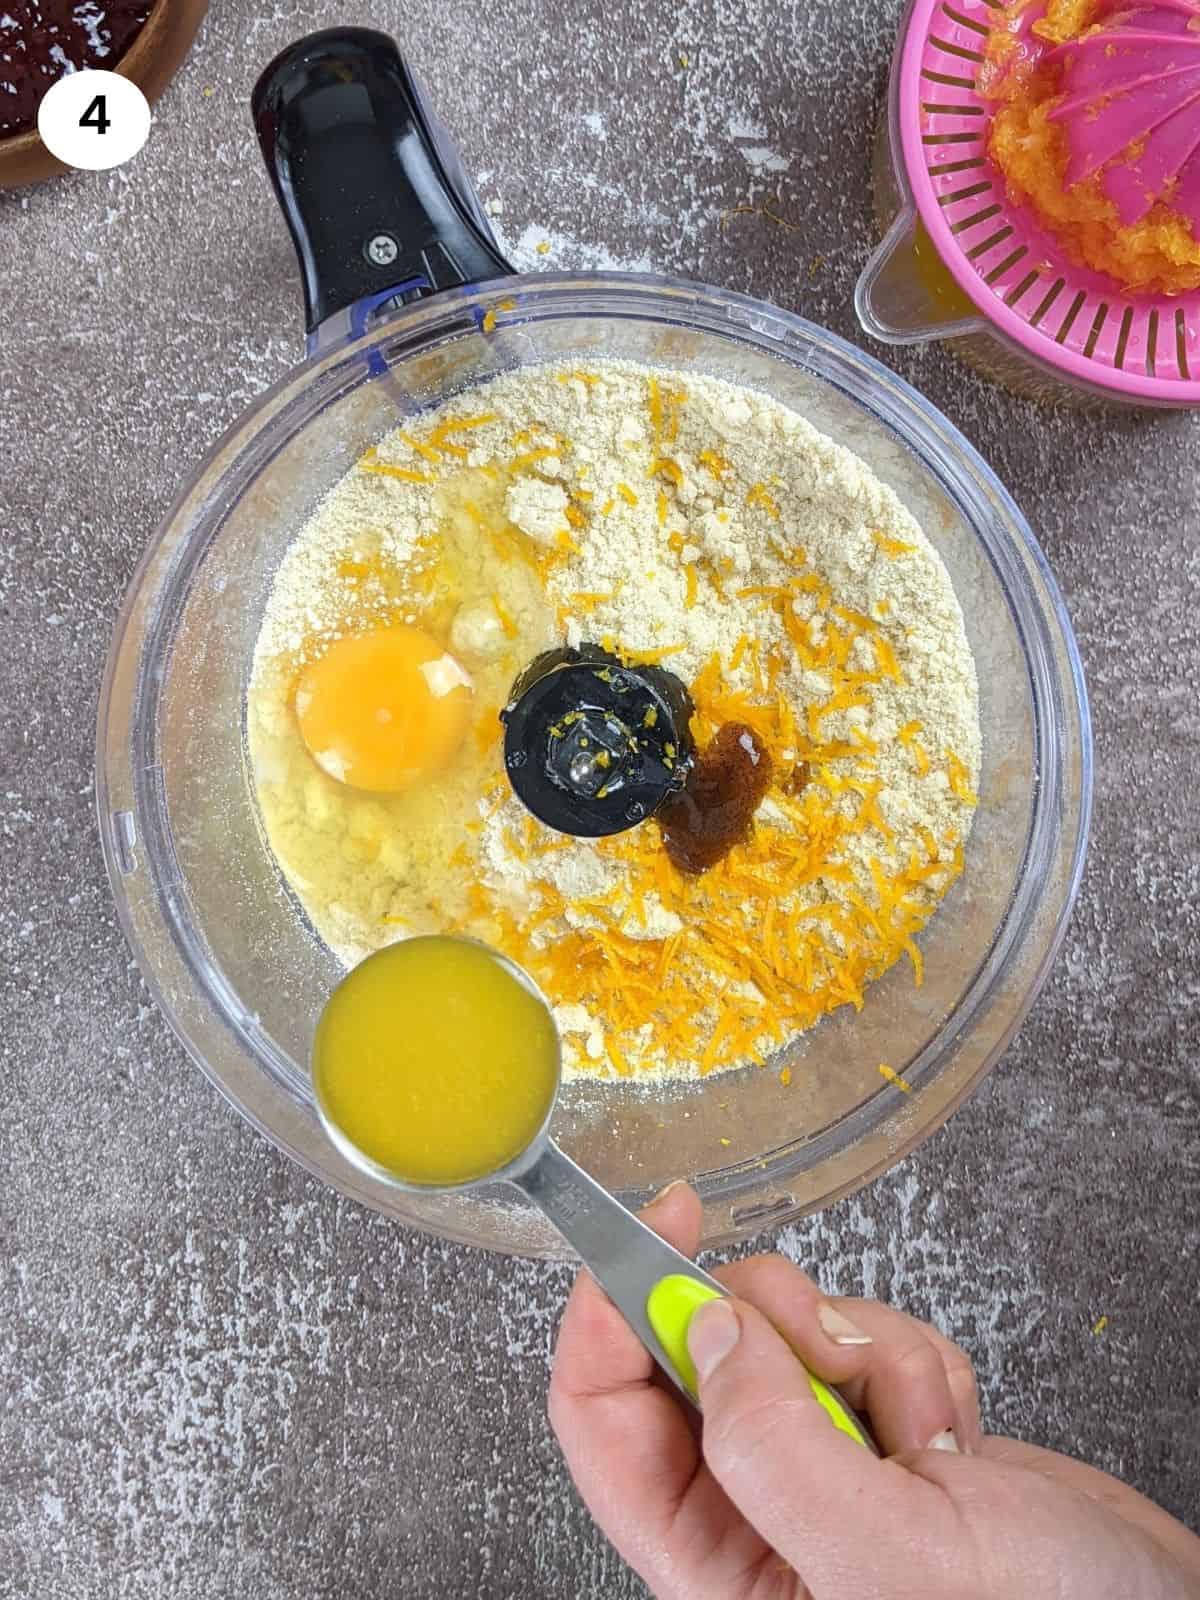 Adding orange juice to the mixture